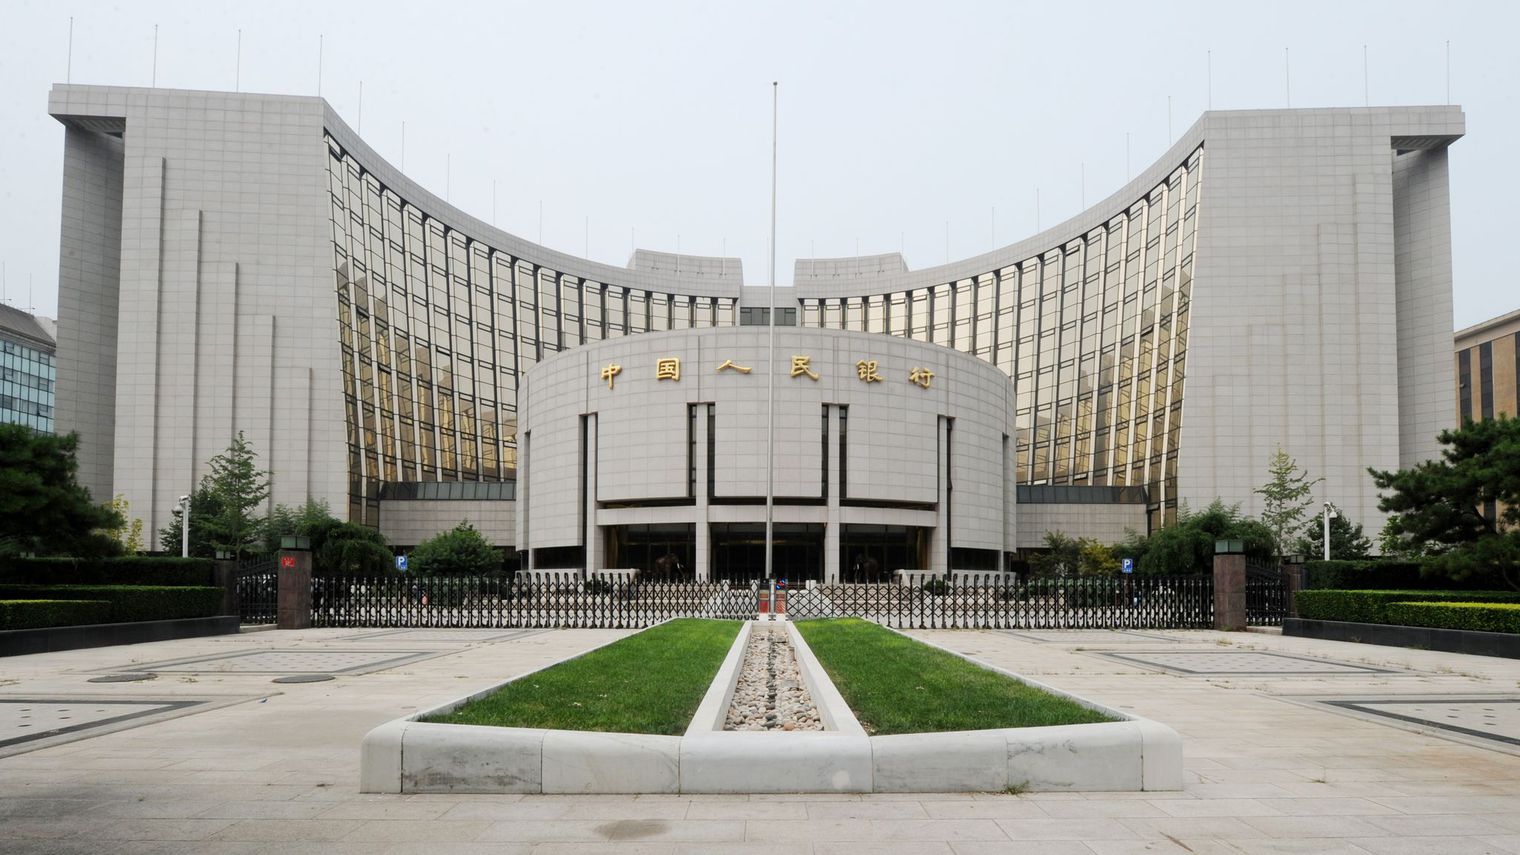 Chine : Une banque victime déune fraude à 120 millions de dollars